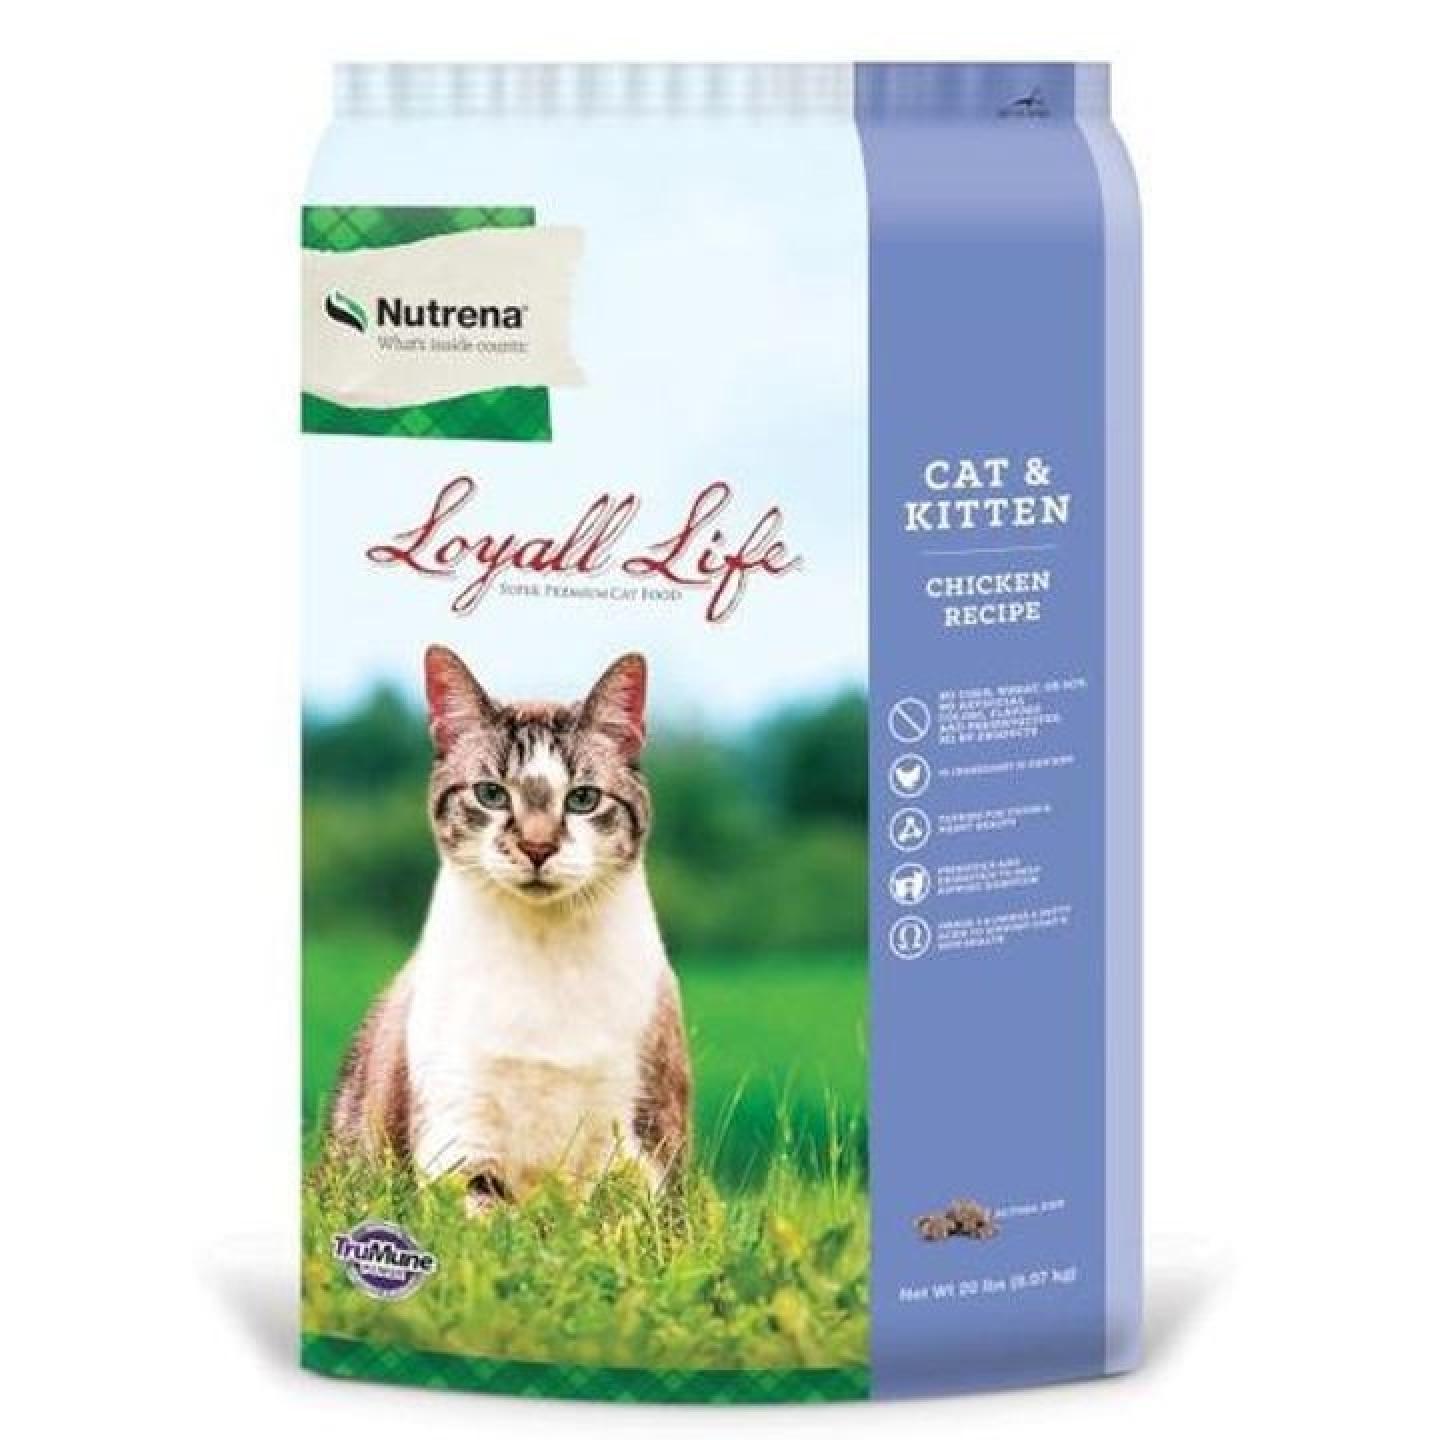 Nutrena Loyall Life Cat & Kitten Chicken Recipe